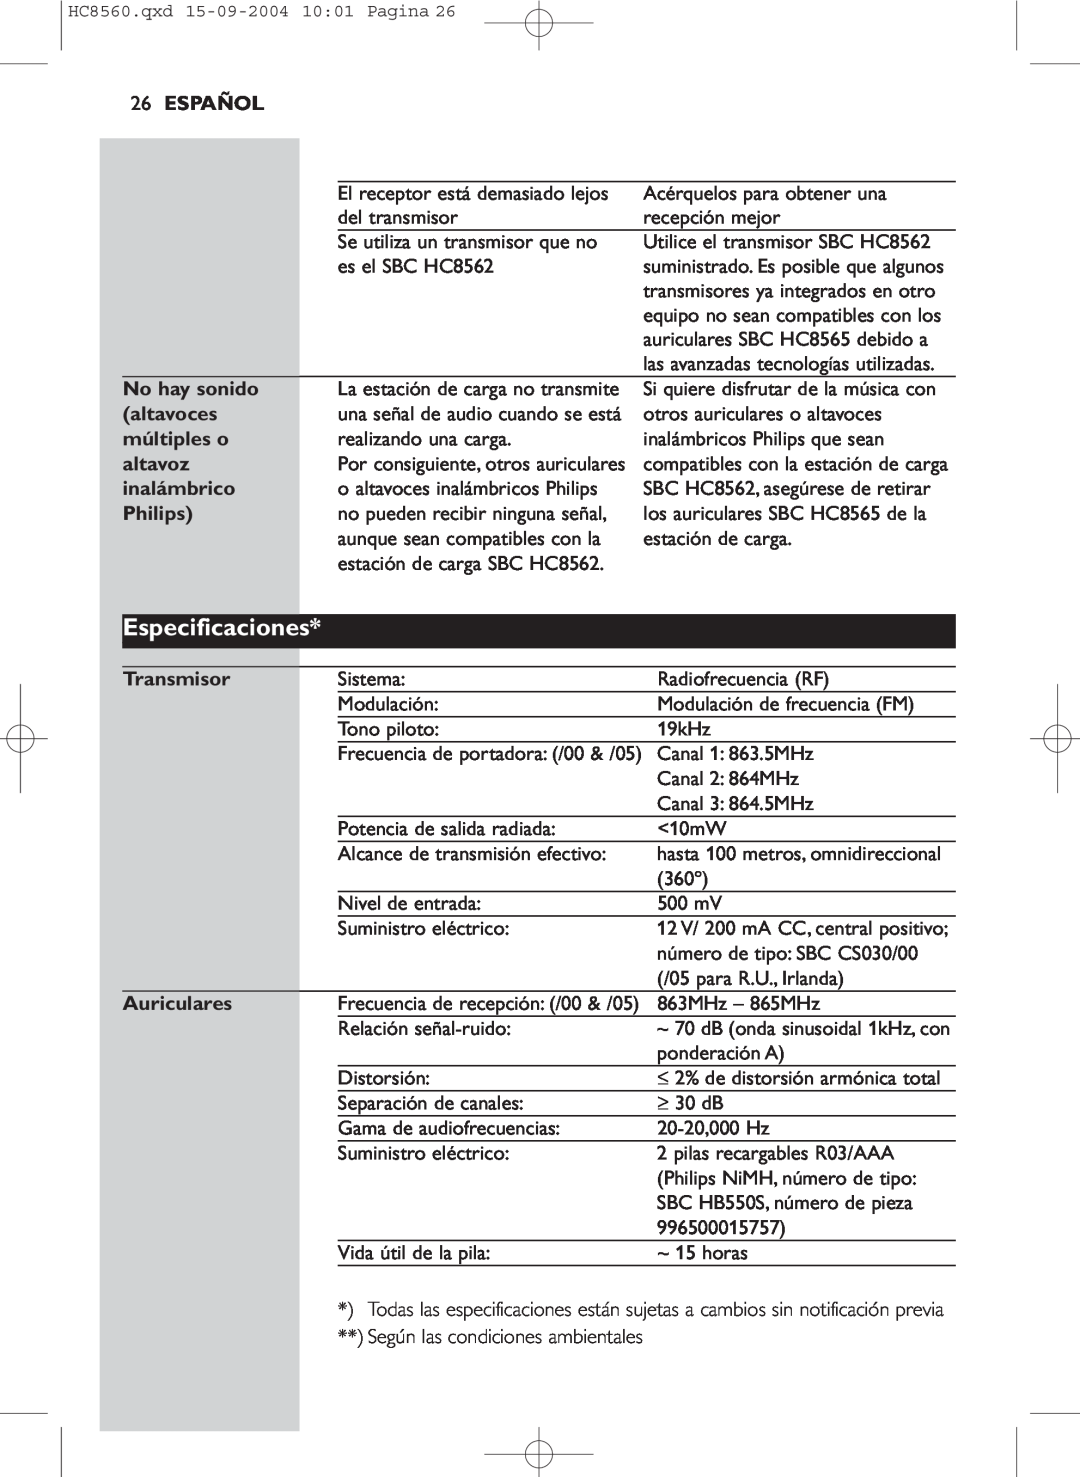 Philips HC 8560 manual Especificaciones, 26ESPAÑOL, No hay sonido, altavoces, múltiples o, altavoz, inalámbrico, Philips 